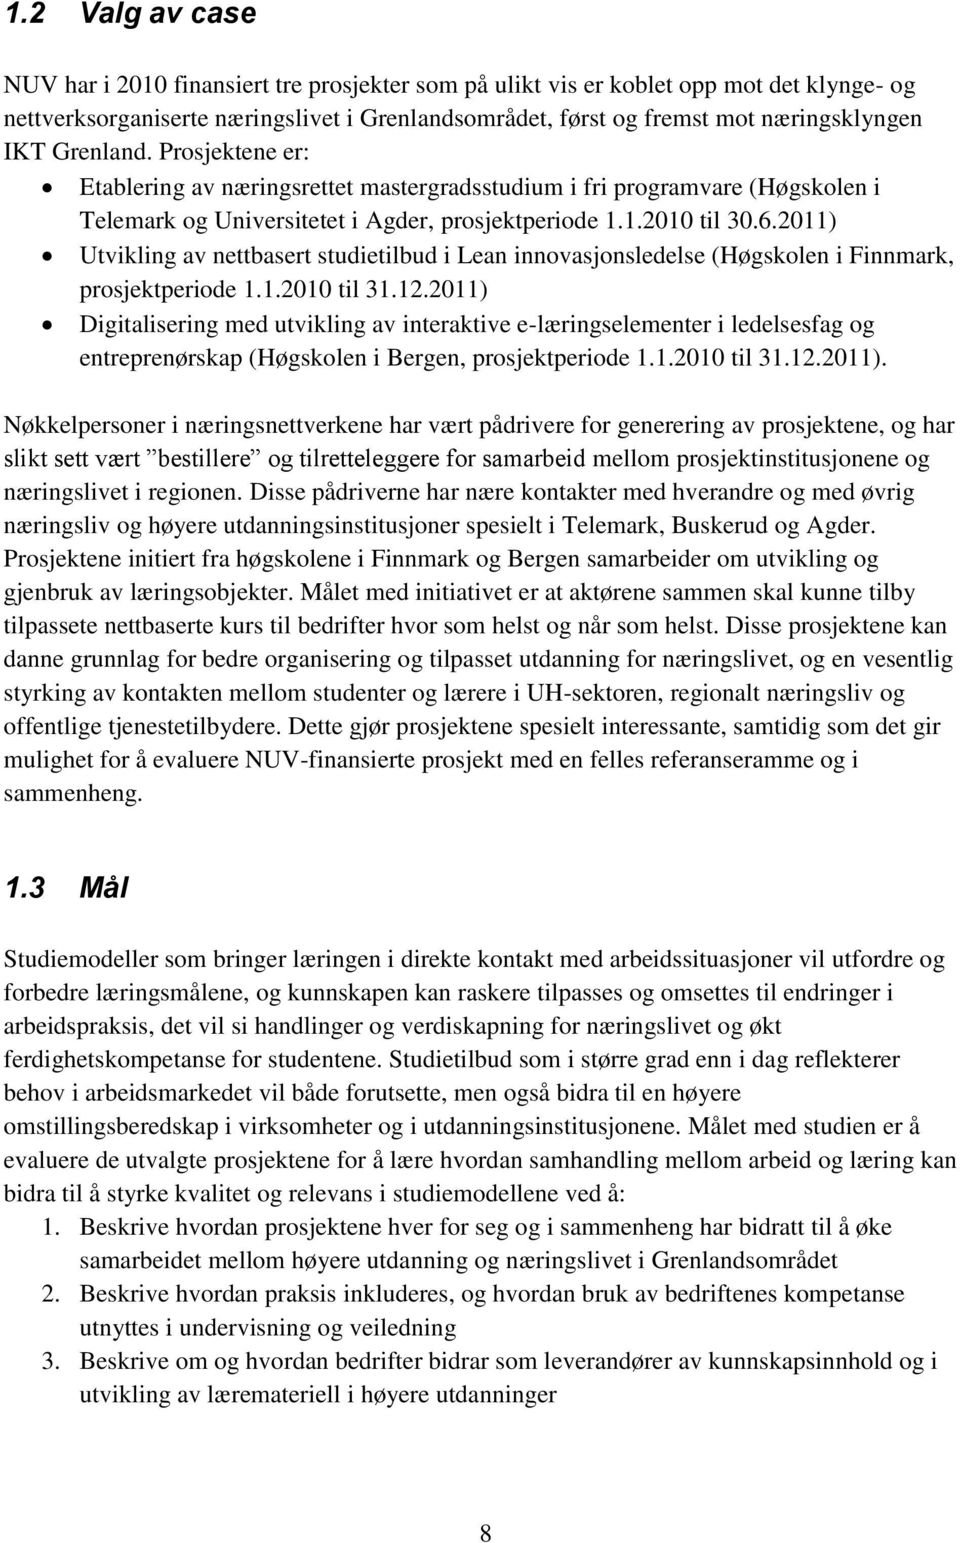 2011) Utvikling av nettbasert studietilbud i Lean innovasjonsledelse (Høgskolen i Finnmark, prosjektperiode 1.1.2010 til 31.12.